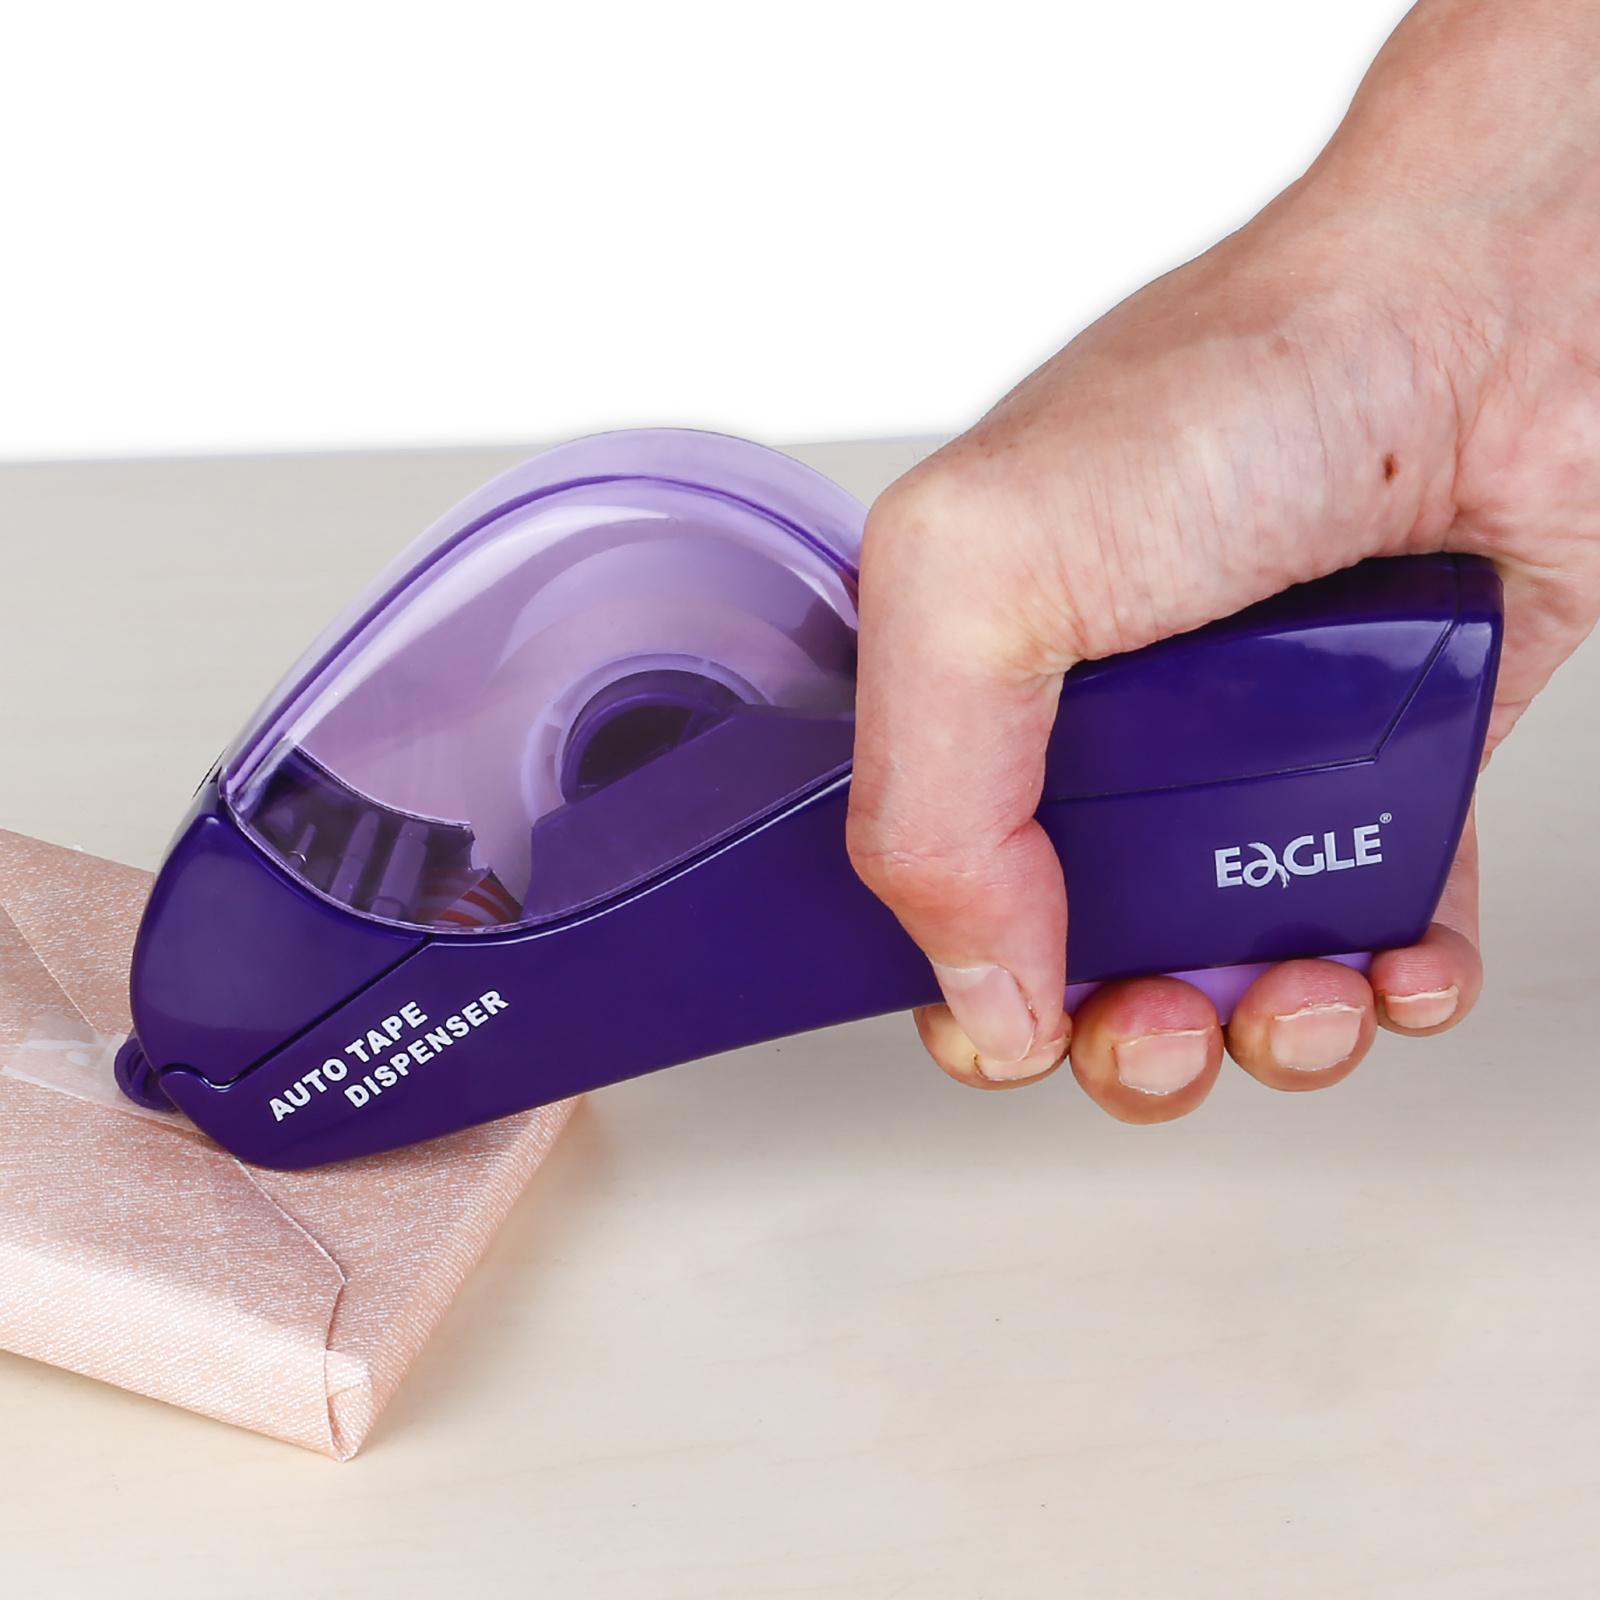 Baumgartens Handheld Trigger Tape Dispenser Purple